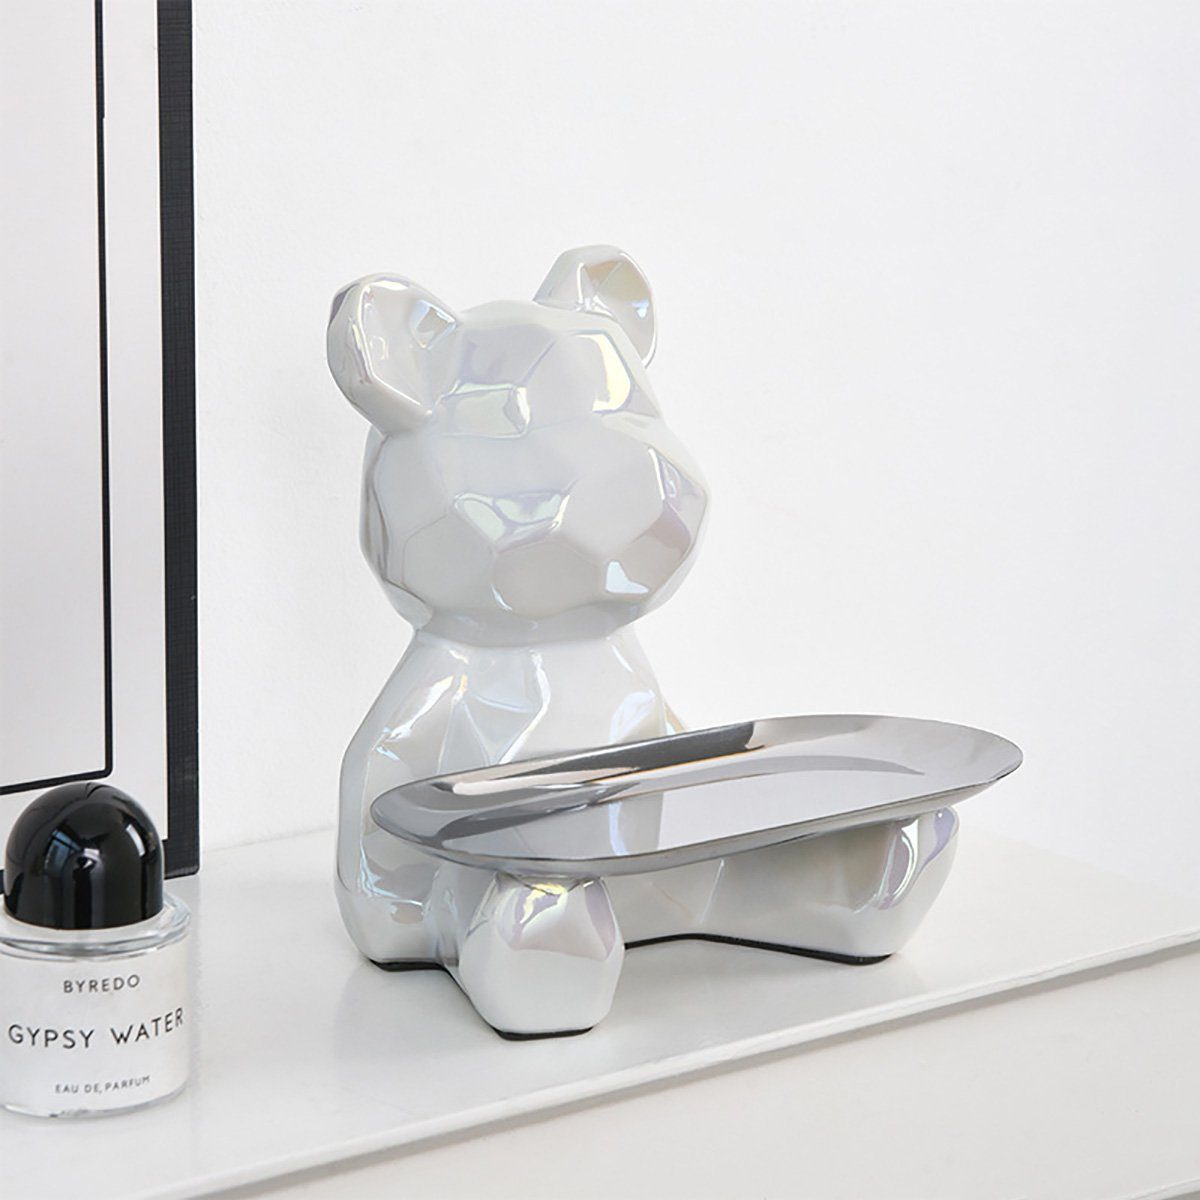 götäzer Tablett Weiss Süßigkeiten-Schlüsselablage, Bär, Wohnzimmer-Dekoration gewalttätiger Statue, Sparschwein